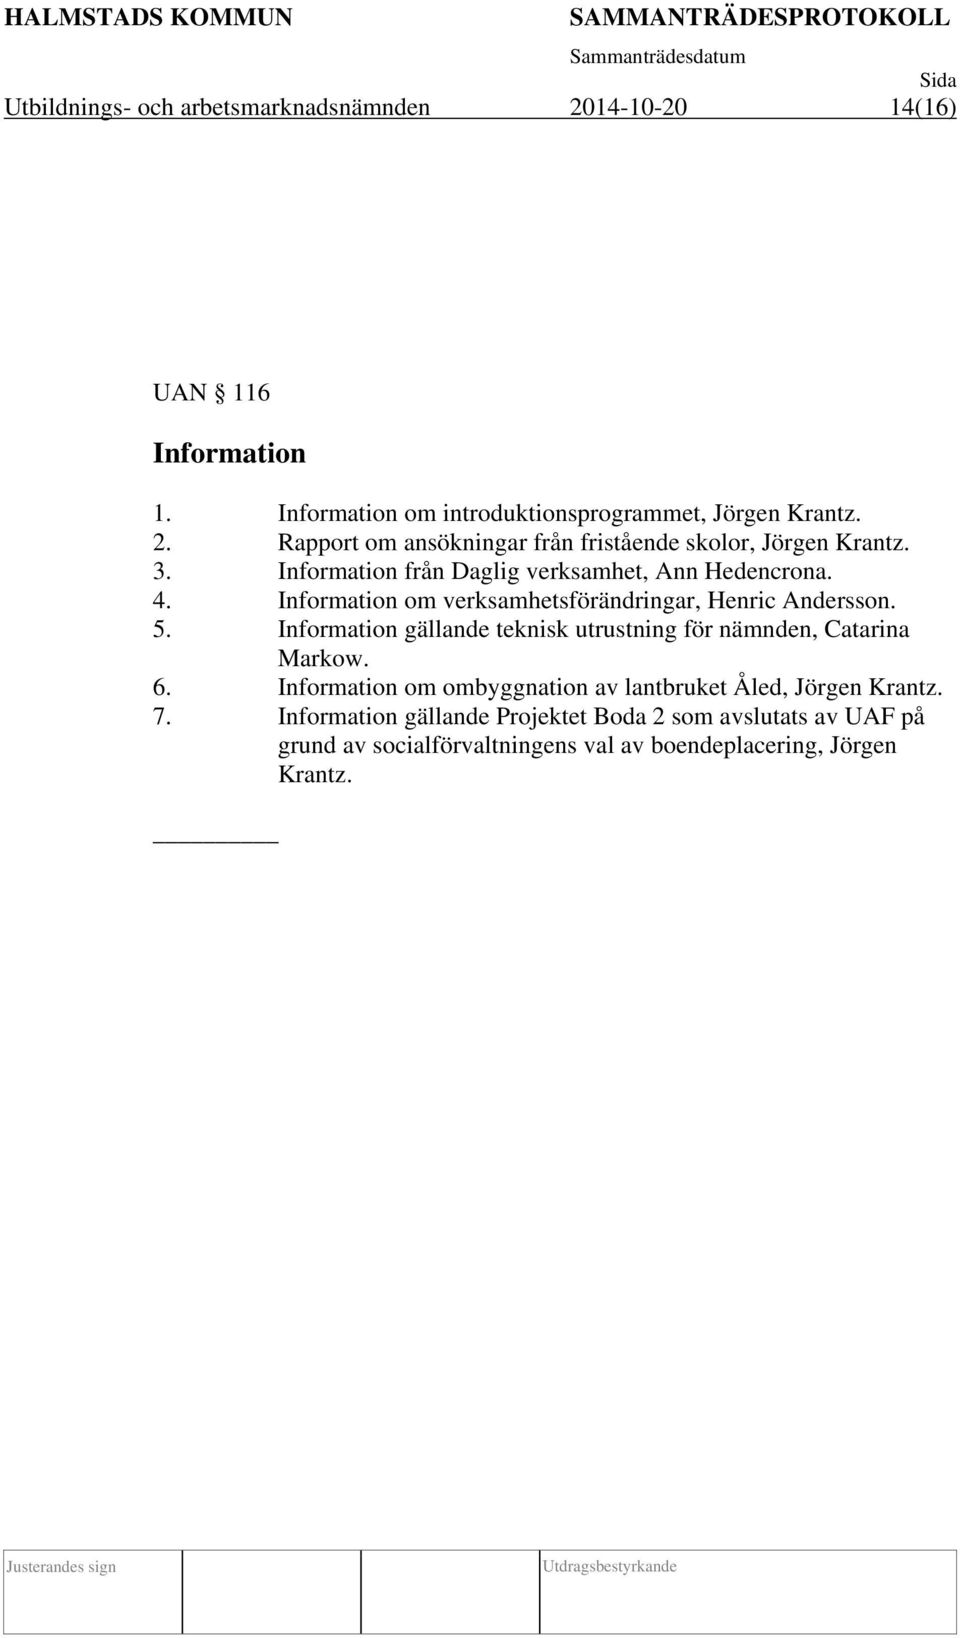 Information gällande teknisk utrustning för nämnden, Catarina Markow. 6. Information om ombyggnation av lantbruket Åled, Jörgen Krantz. 7.